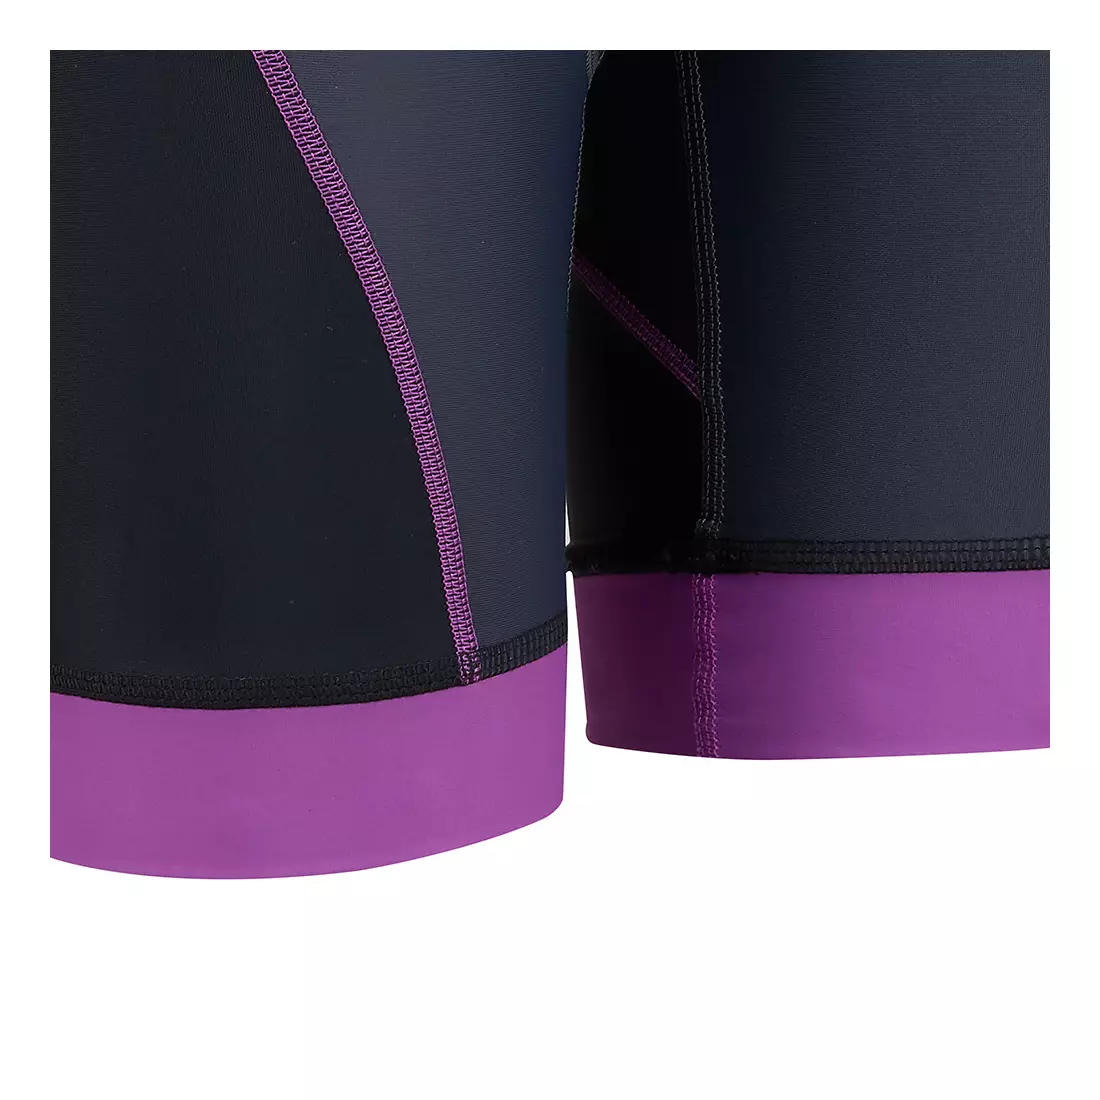 TENN OUTDOORS Pantaloni scurți pentru ciclism pentru femei VIPER+ 2.0 negru și violet